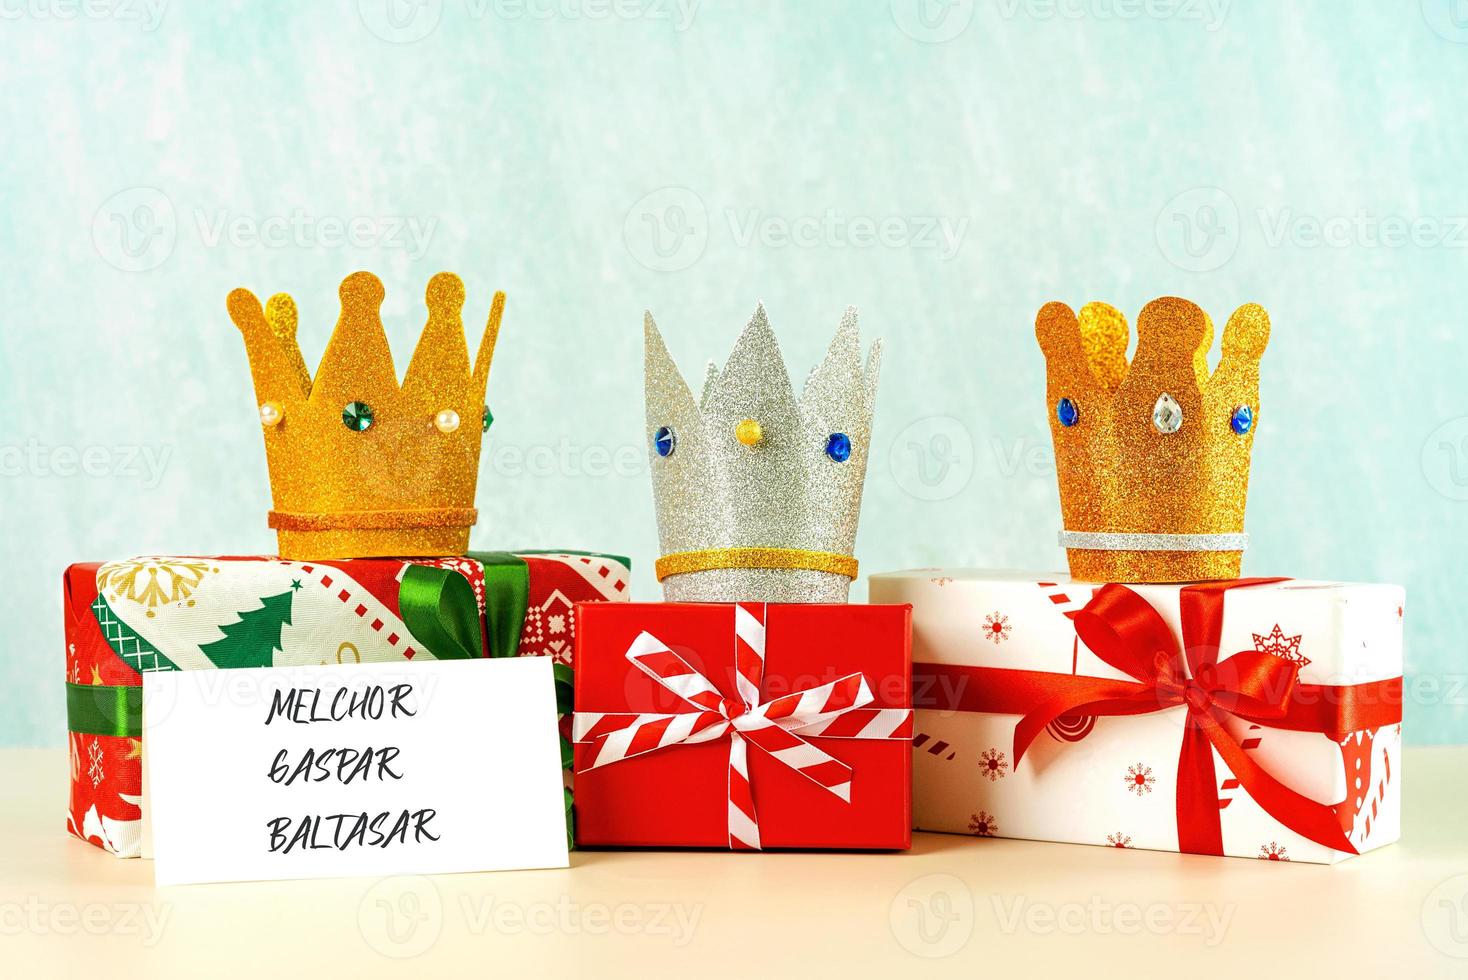 drei kronen der drei weisen mit weihnachtsgeschenkboxen. konzept für den magos-tag von dia de reyes. drei weise Männer foto